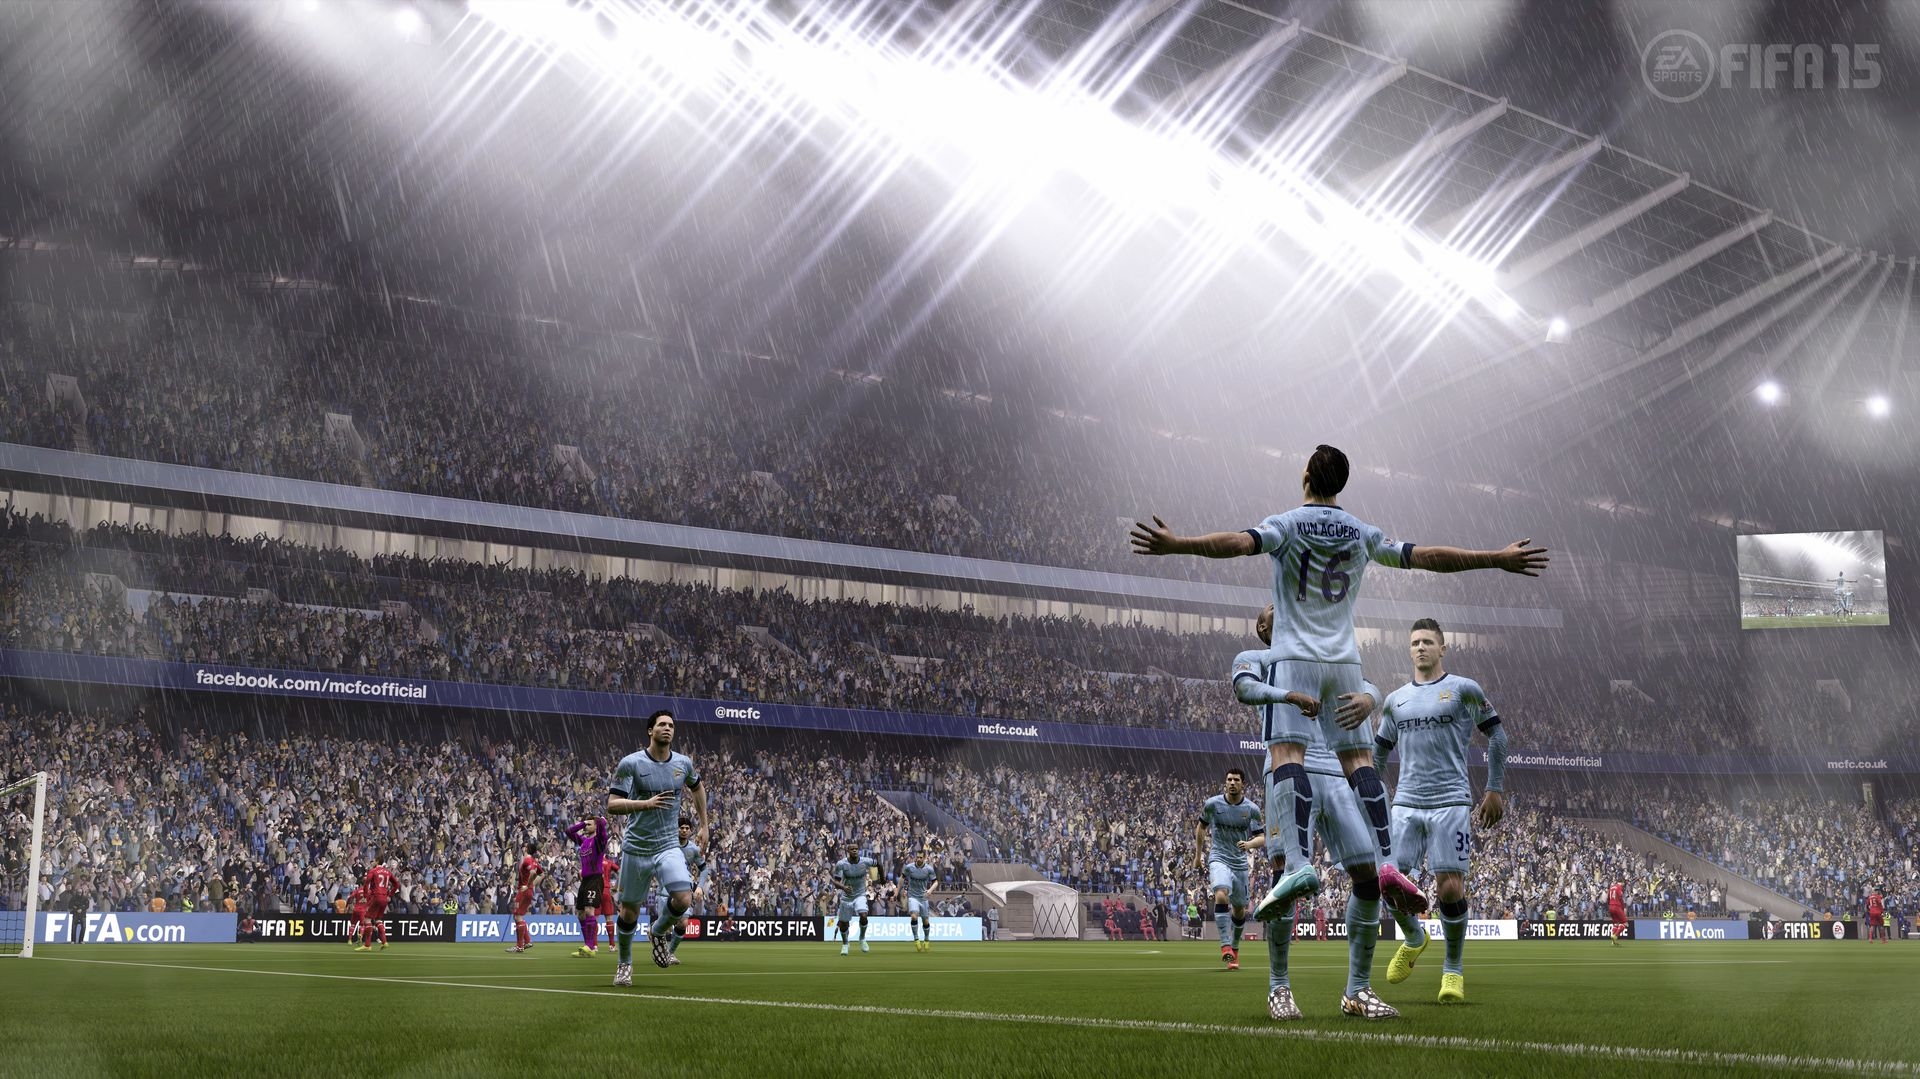 Скриншот из игры FIFA 15 под номером 17